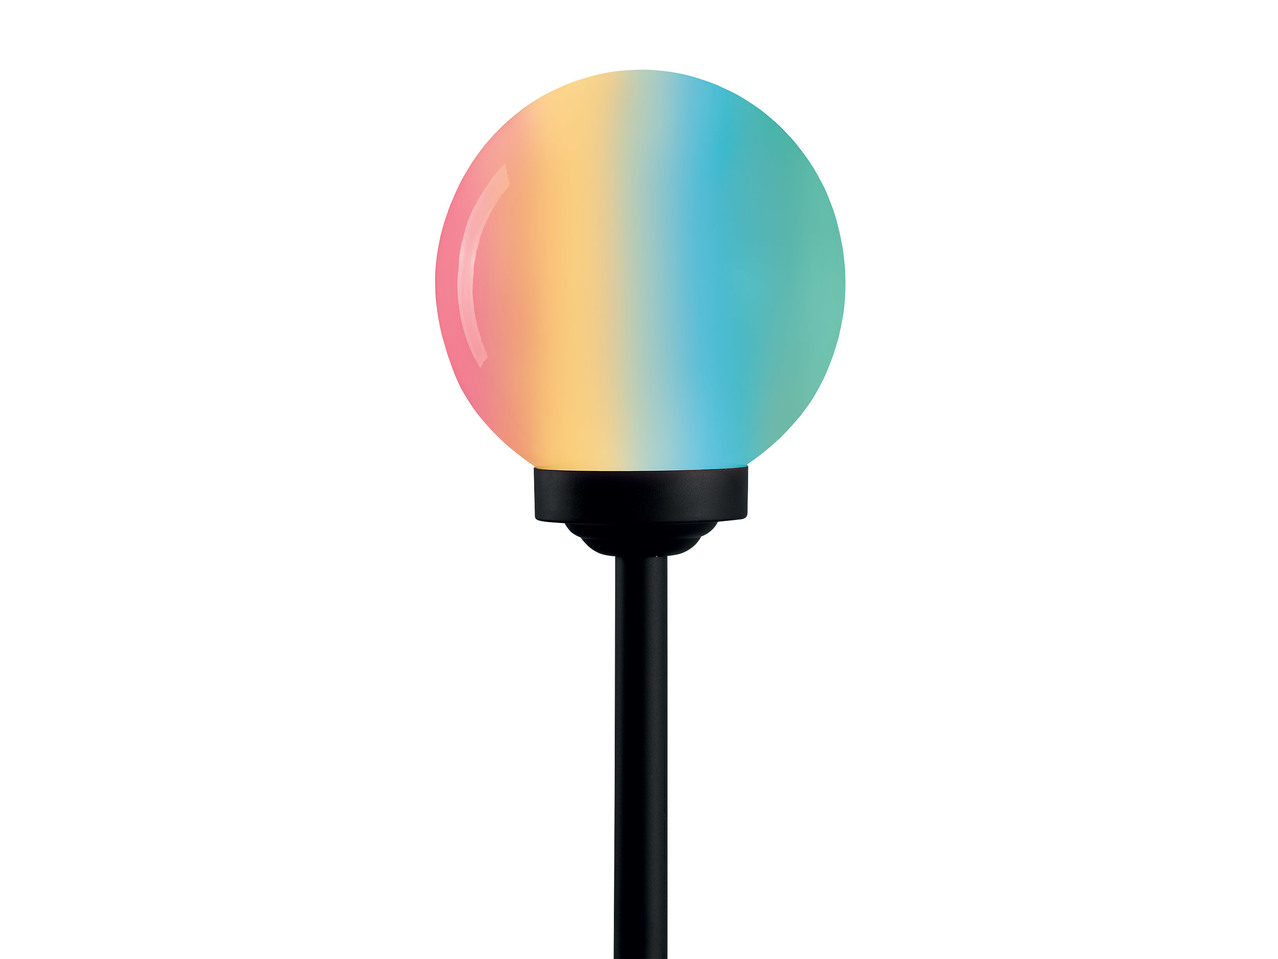 25cm Solar-Powered LED Light Ball